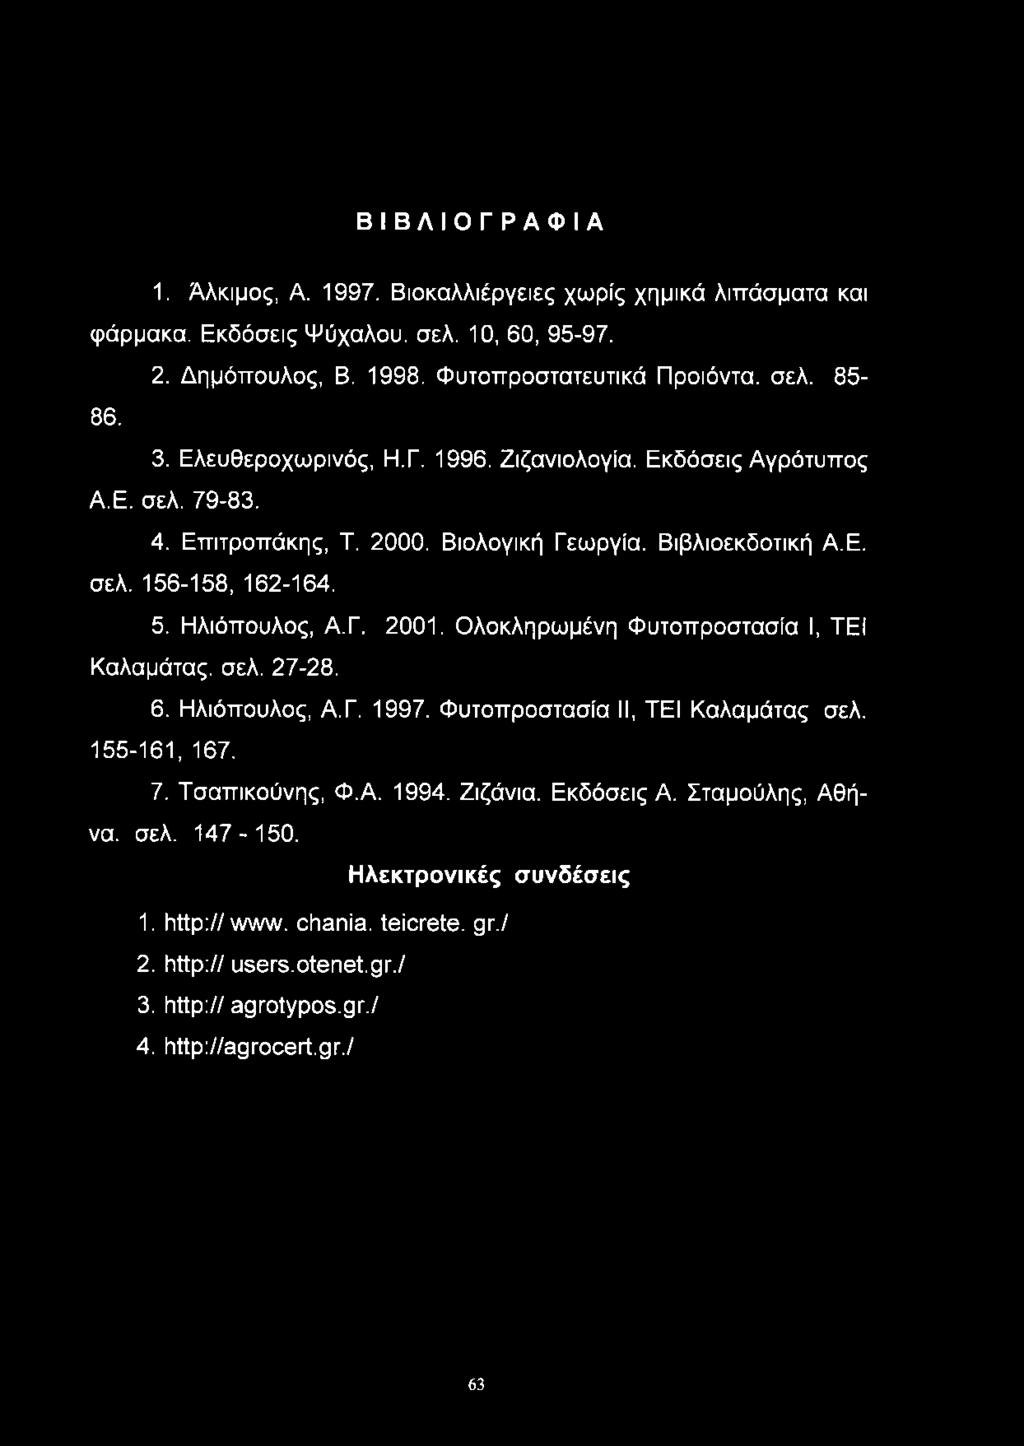 Ηλιόπουλος, Α.Γ. 2001. Ολοκληρωμένη Φυτοπροστασία I, TEI Καλαμάτας, σελ. 27-28. 6. Ηλιόπουλος, Α.Γ. 1997. Φυτοπροστασία II, TEI Καλαμάτας σελ. 155-161, 167. 7. Τσαπικούνης, Φ.Α. 1994.